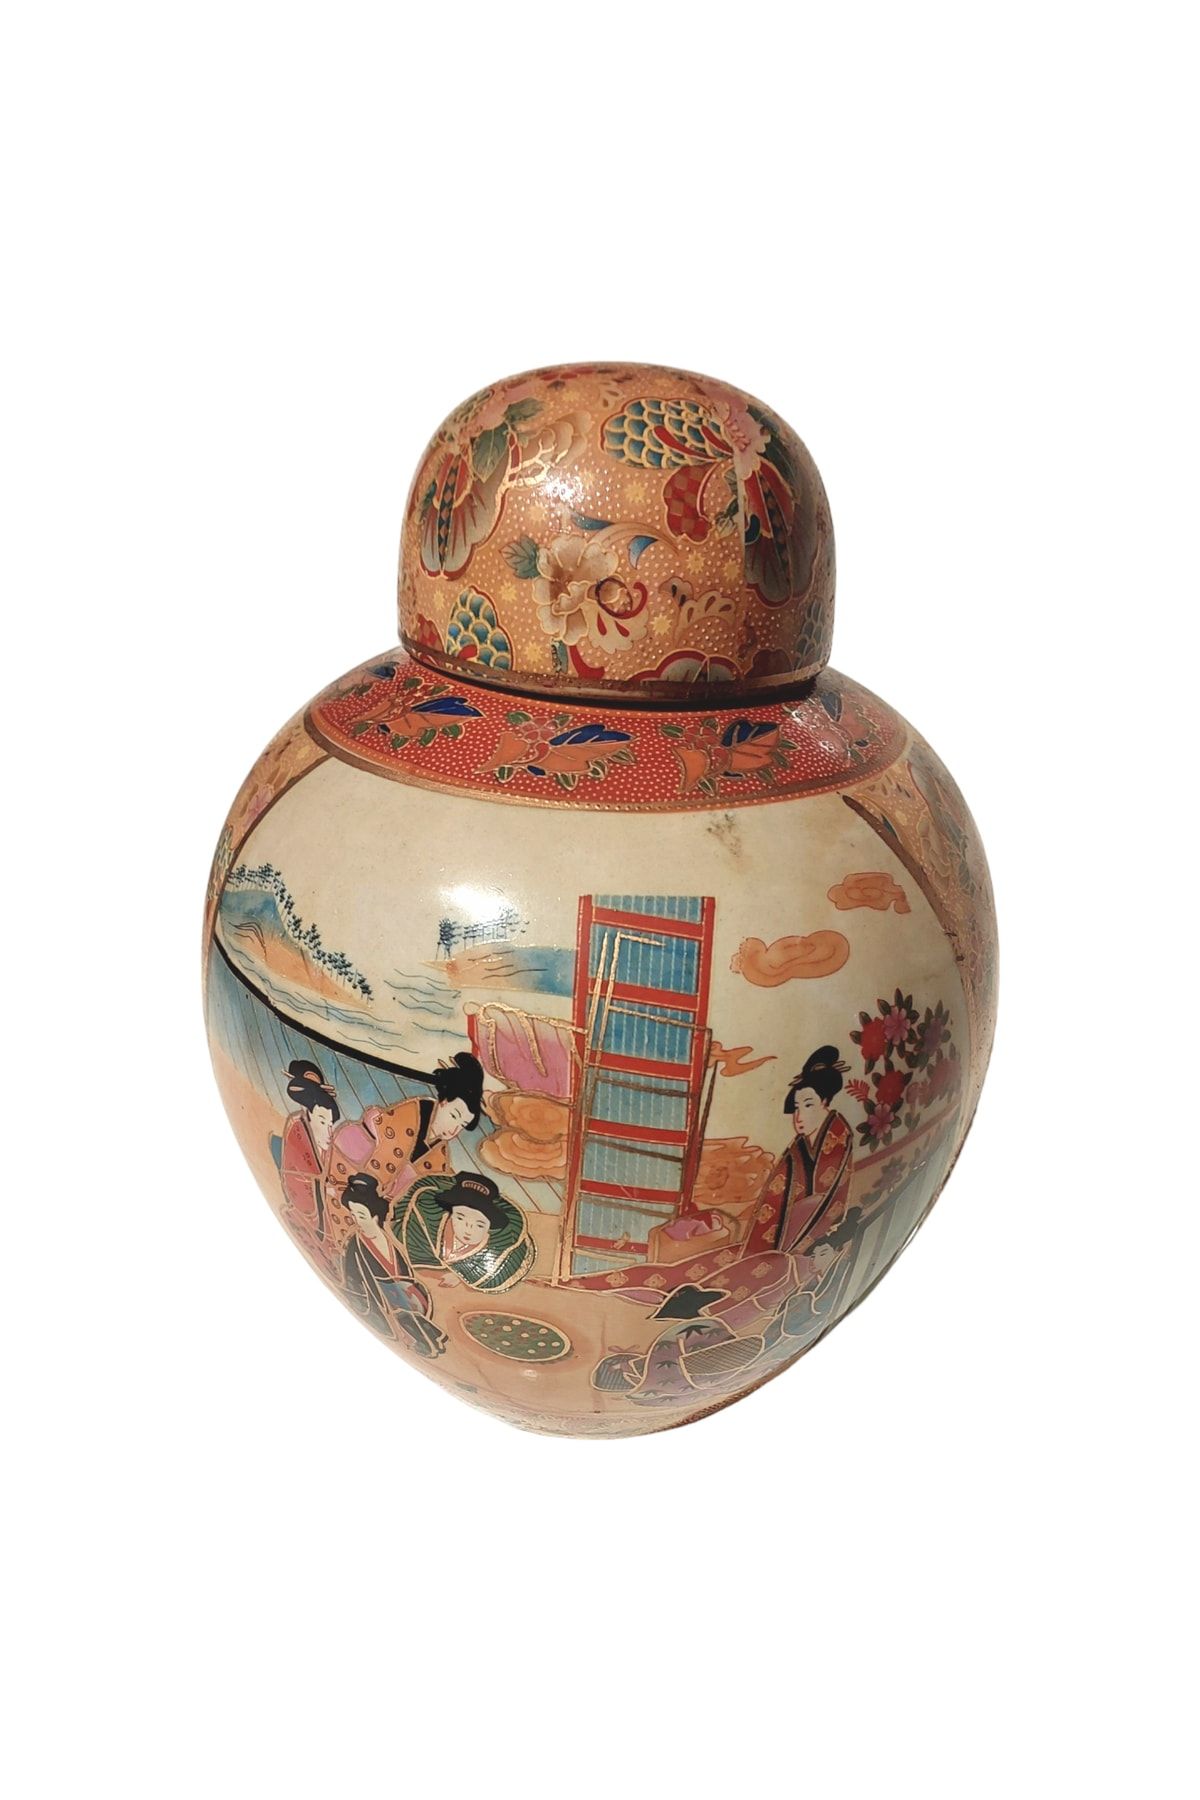 Home Styleast Uzakdoğu Porselen El Boyama Kabartmalı Mineli Eski Çin Kırmızı Damgalı Porselen Işlemeli Küp Vazo